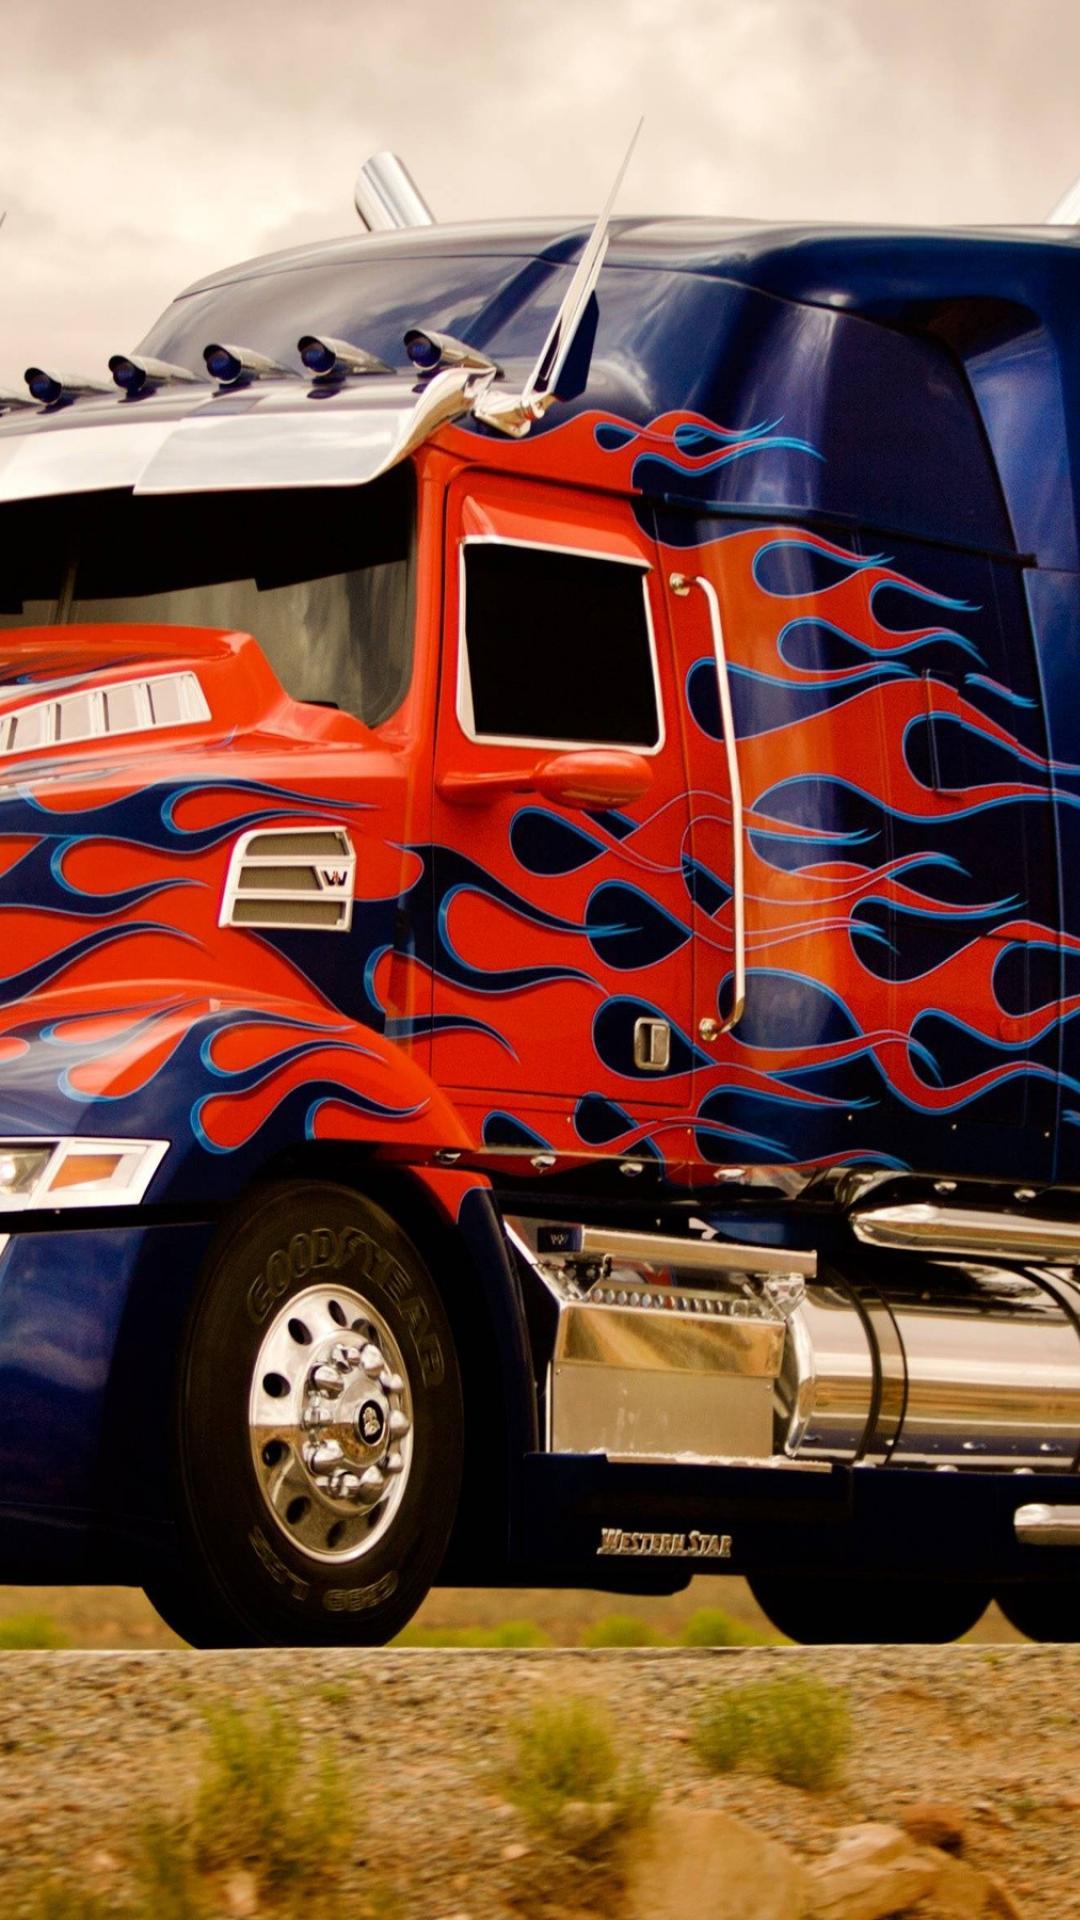 Optimus prime truck transformers 4 wallpaper